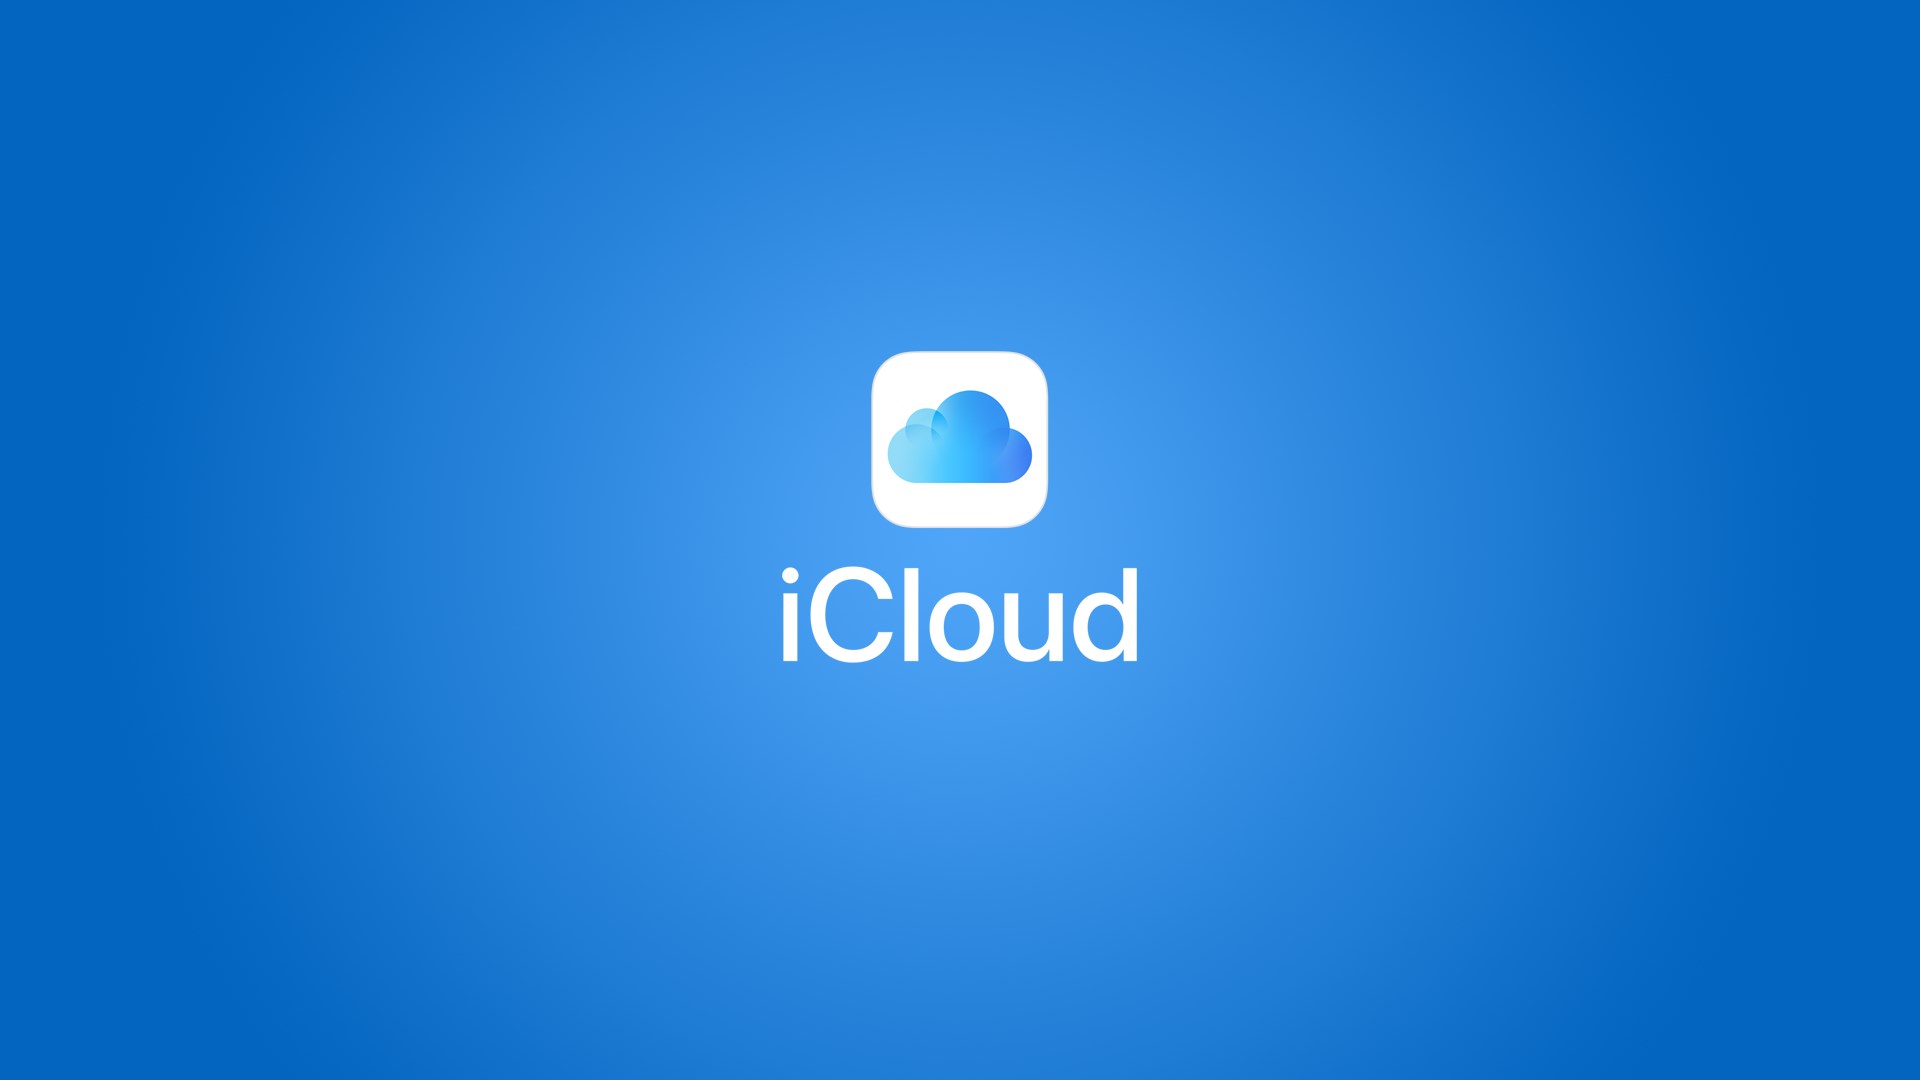 Confira esse tutorial explicativo de como fazer Backup no iCloud e usar a nuvem da Apple para garantir a segurança de seus dados. (backup)